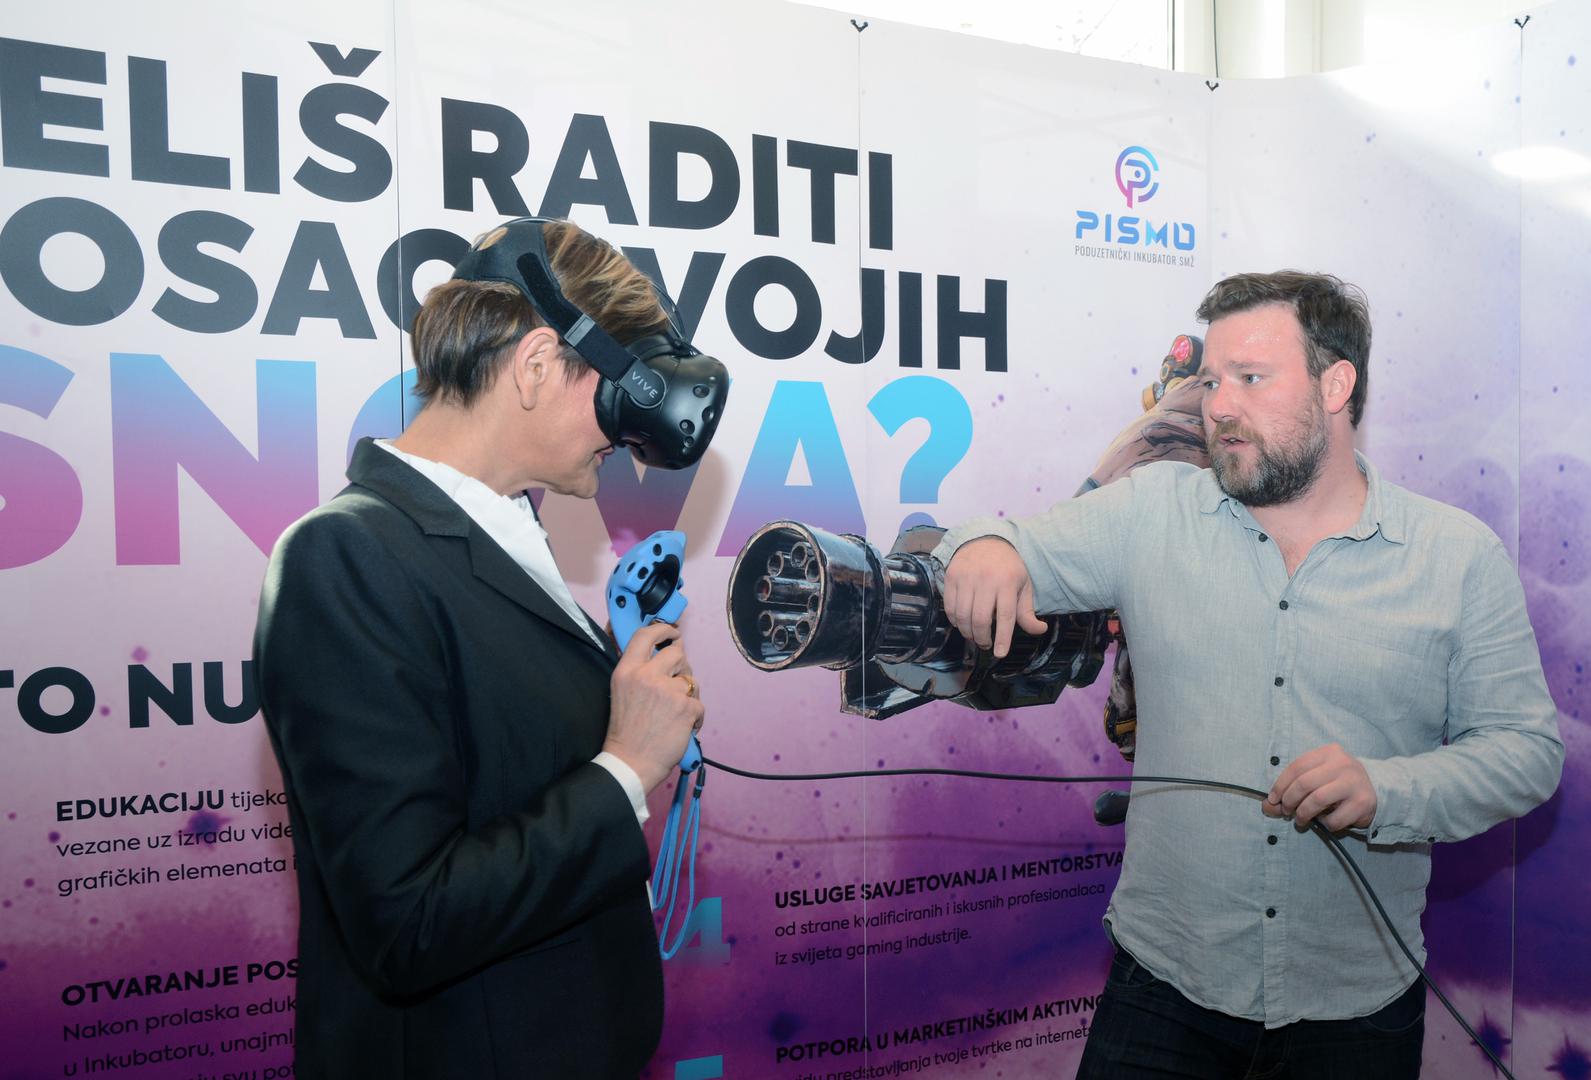 Na promociji Pisma bila je i ministrica Martina Dalić te je održano natjecanje u eSportu koje je okupilo brojne gamere